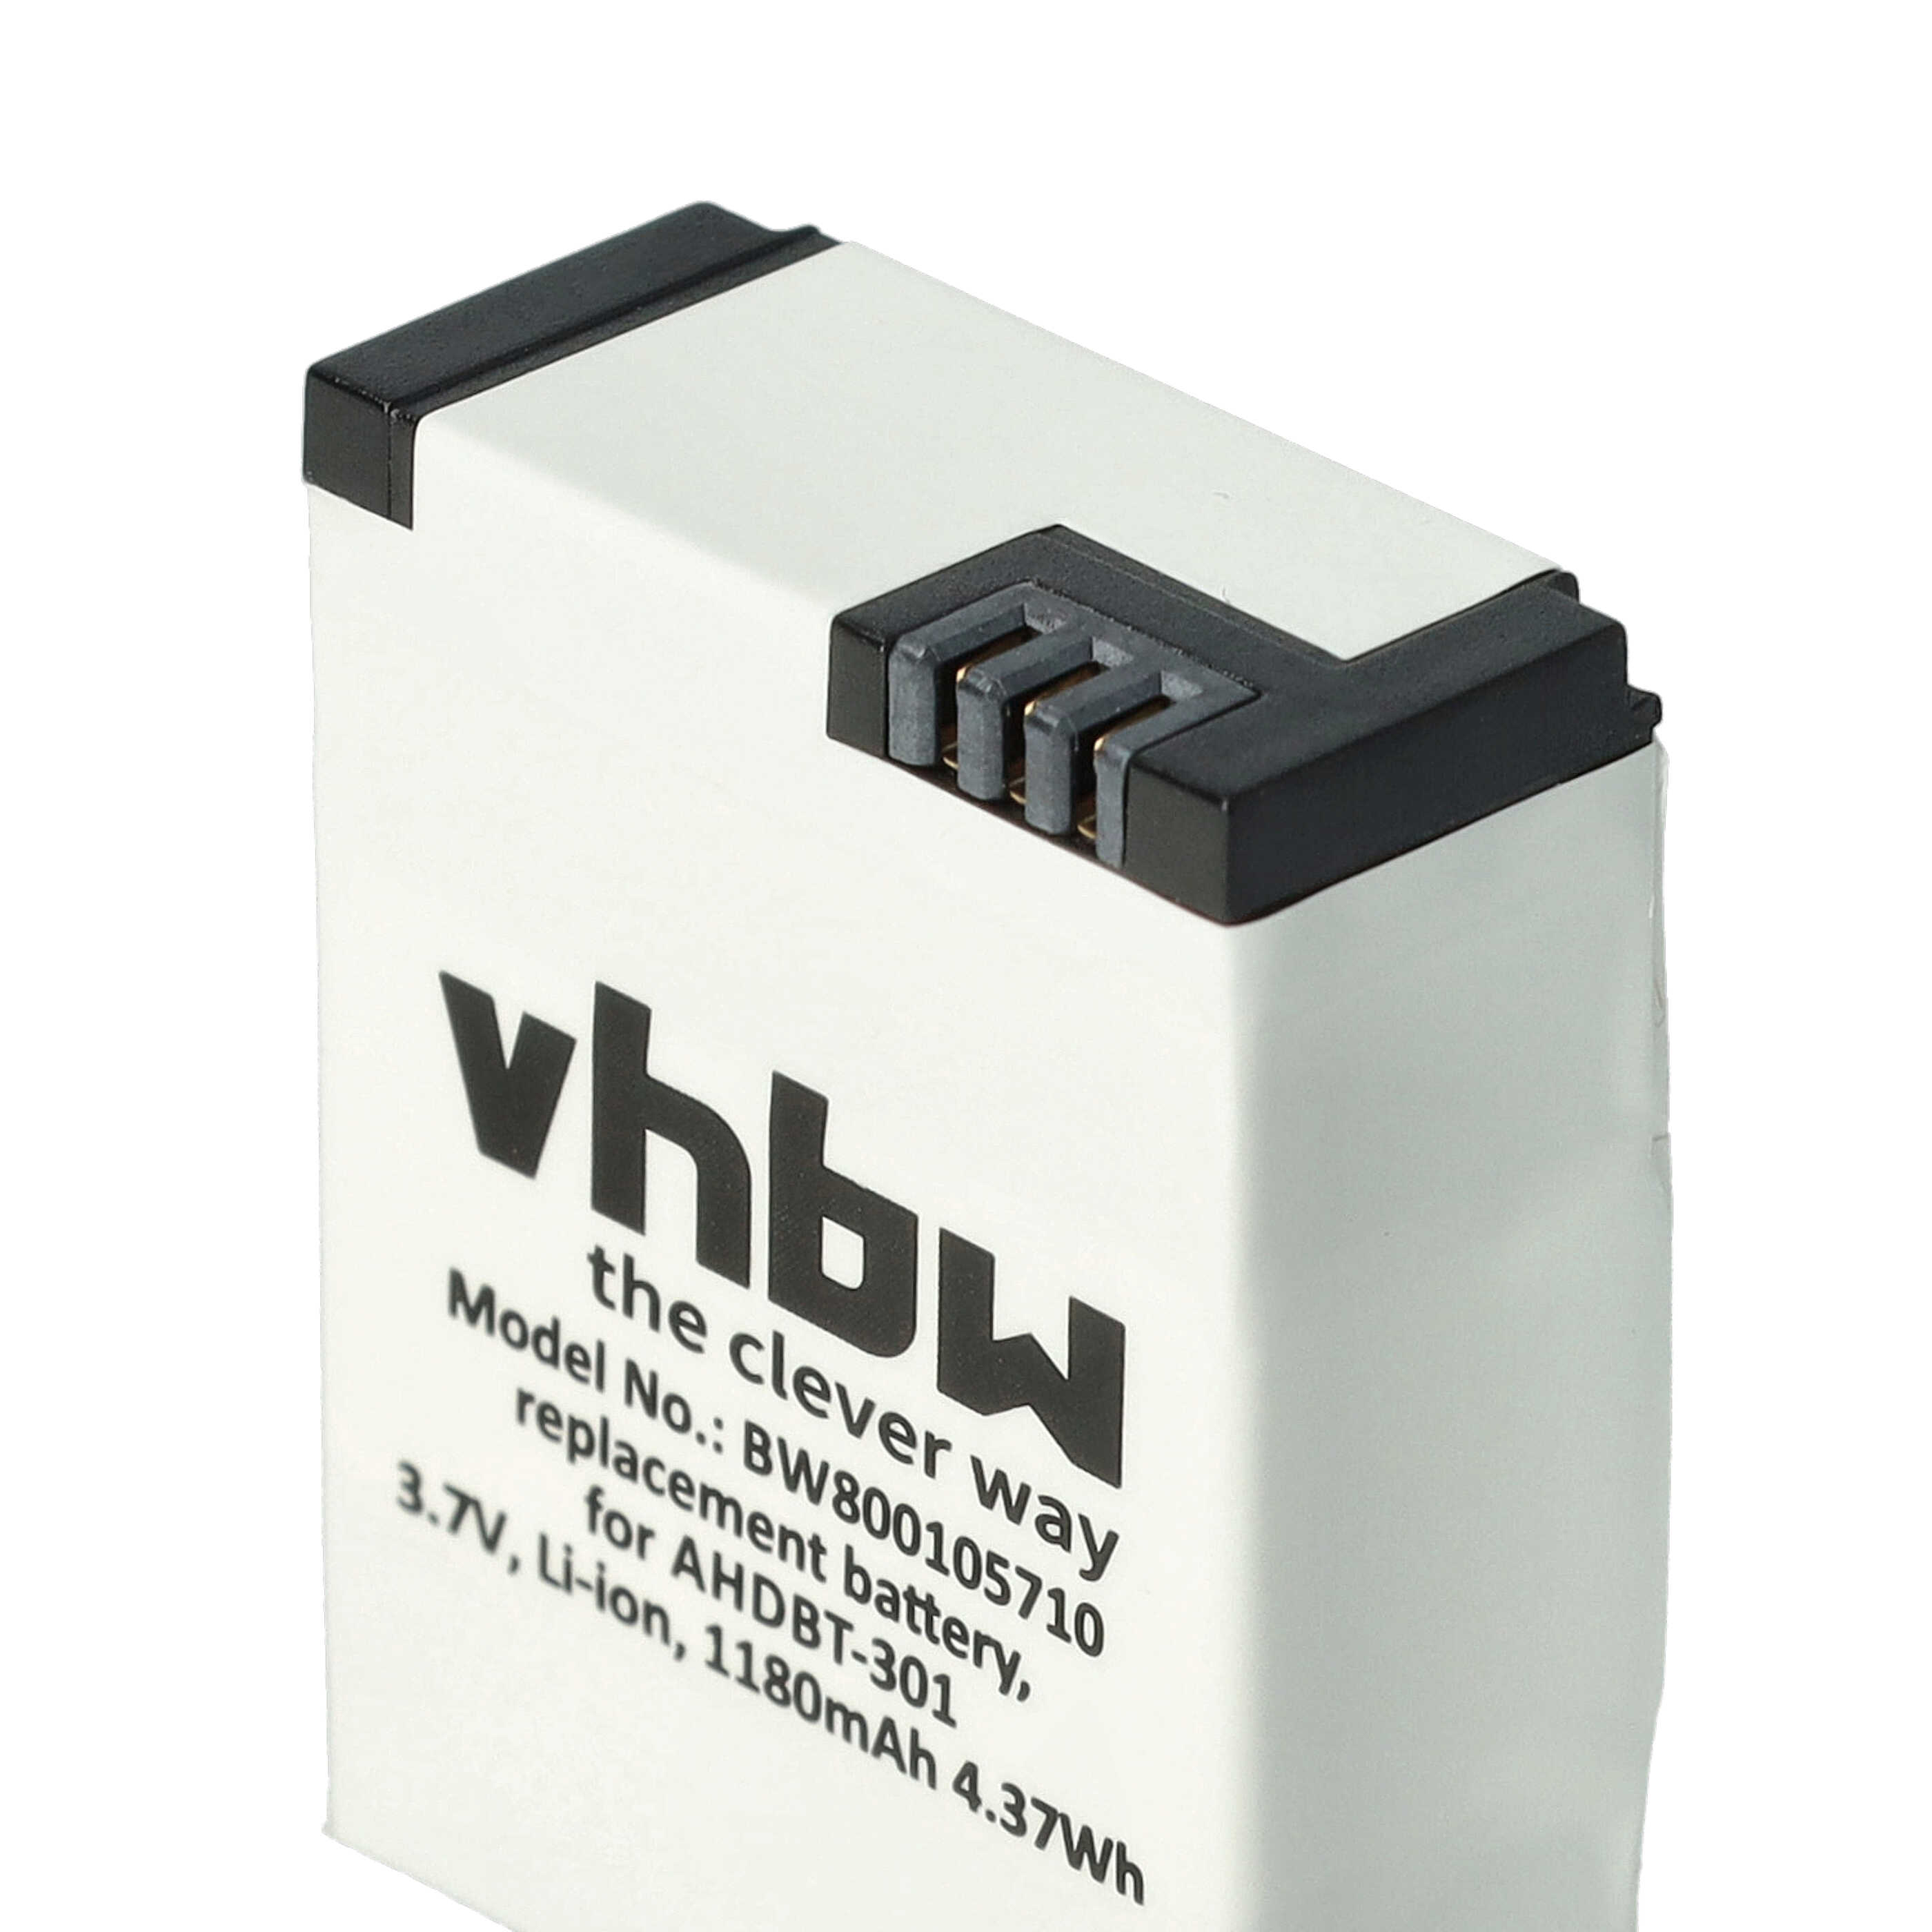 vhbw Kit de chargement compatible avec GoPro / Hero 3 action-cam - 2x batteries + chargeur double